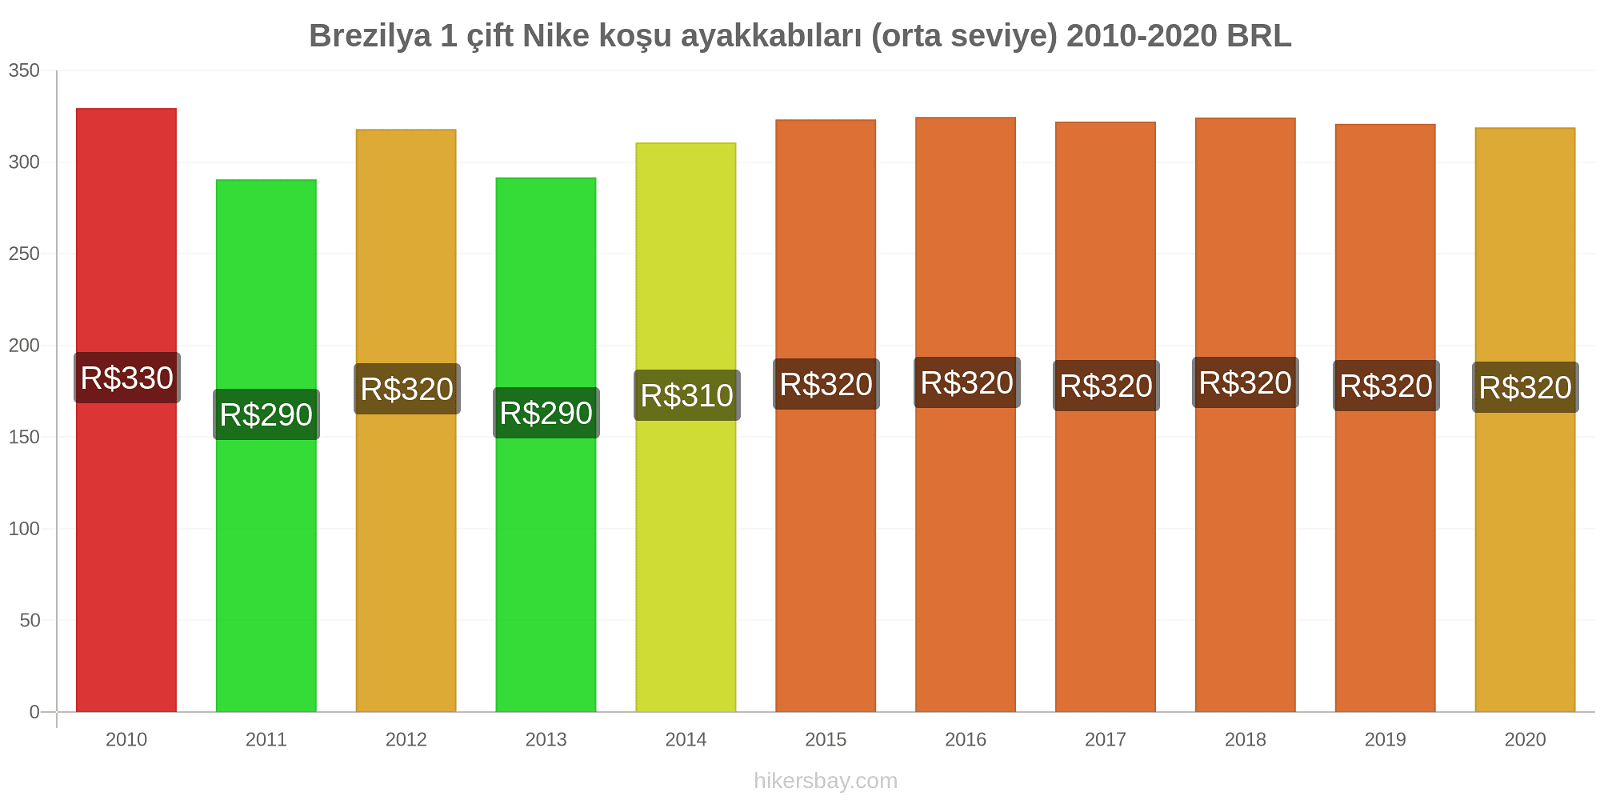 Brezilya fiyat değişiklikleri 1 çift Nike koşu ayakkabıları (orta seviye) hikersbay.com